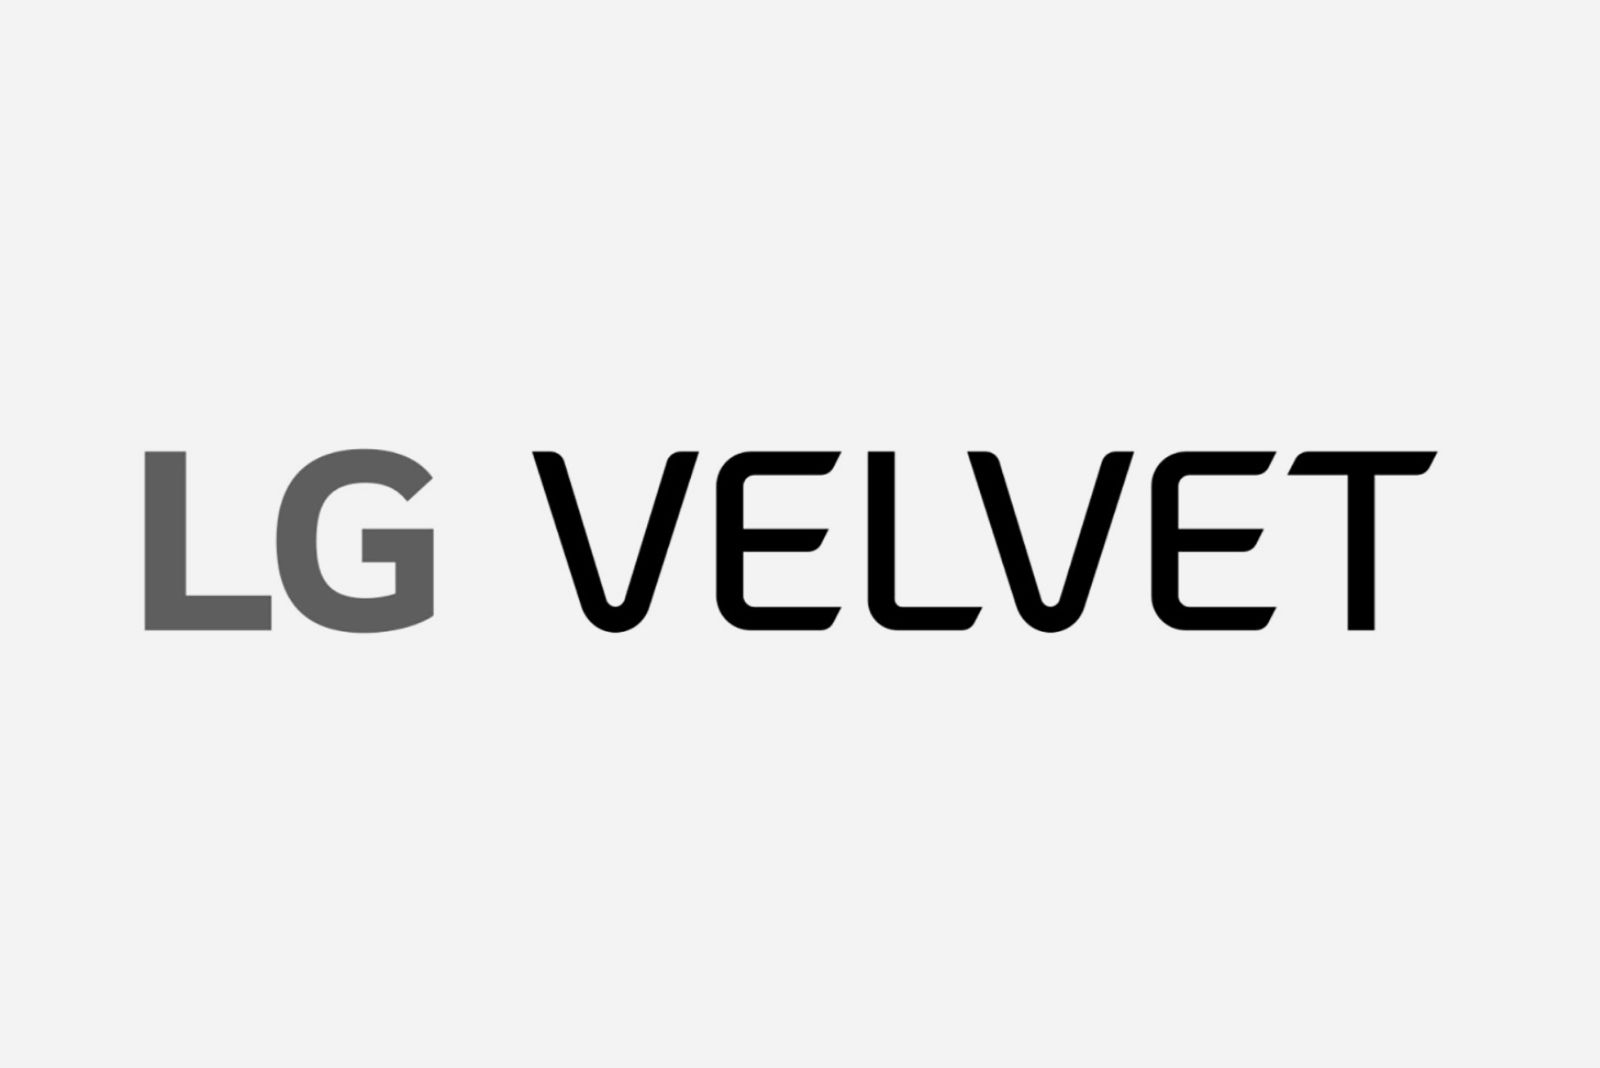 LG Velvet image 2